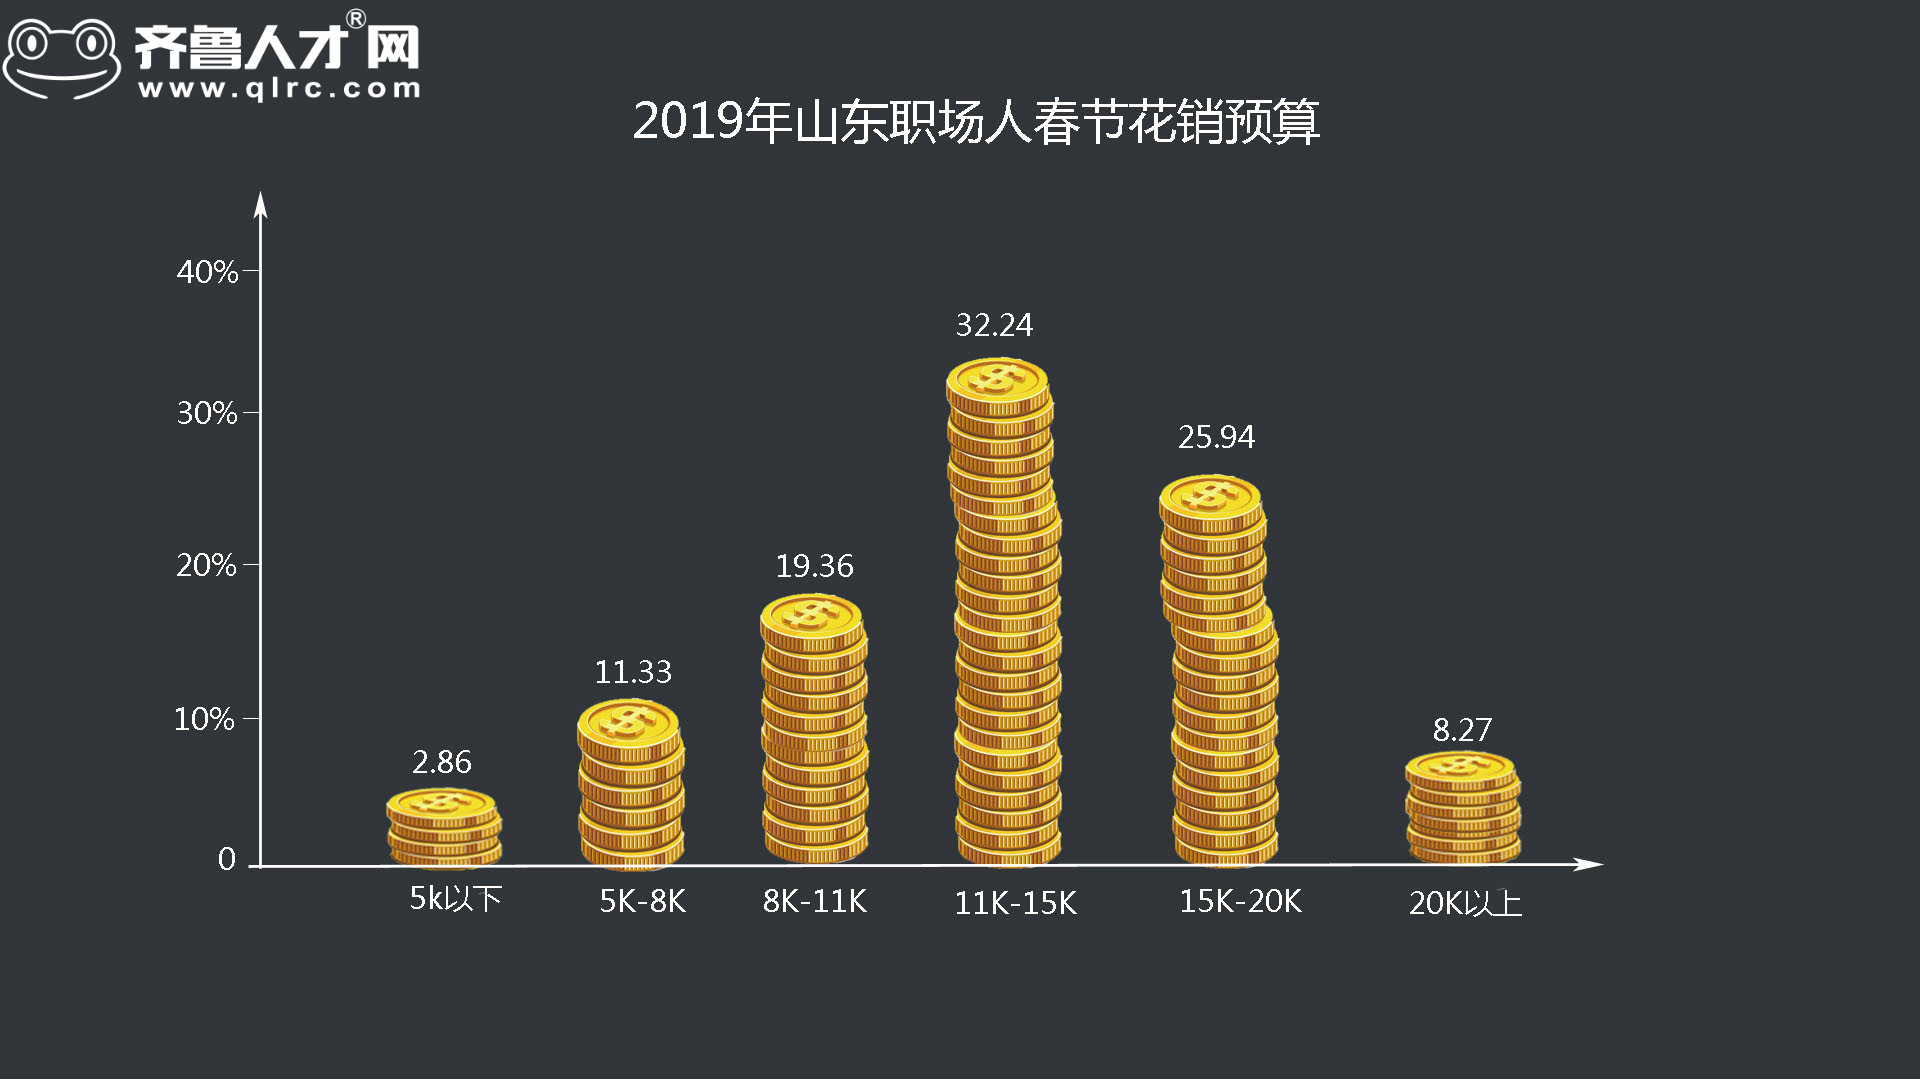 齐鲁人才网-2019年山东四季度薪酬数据图1.jpg